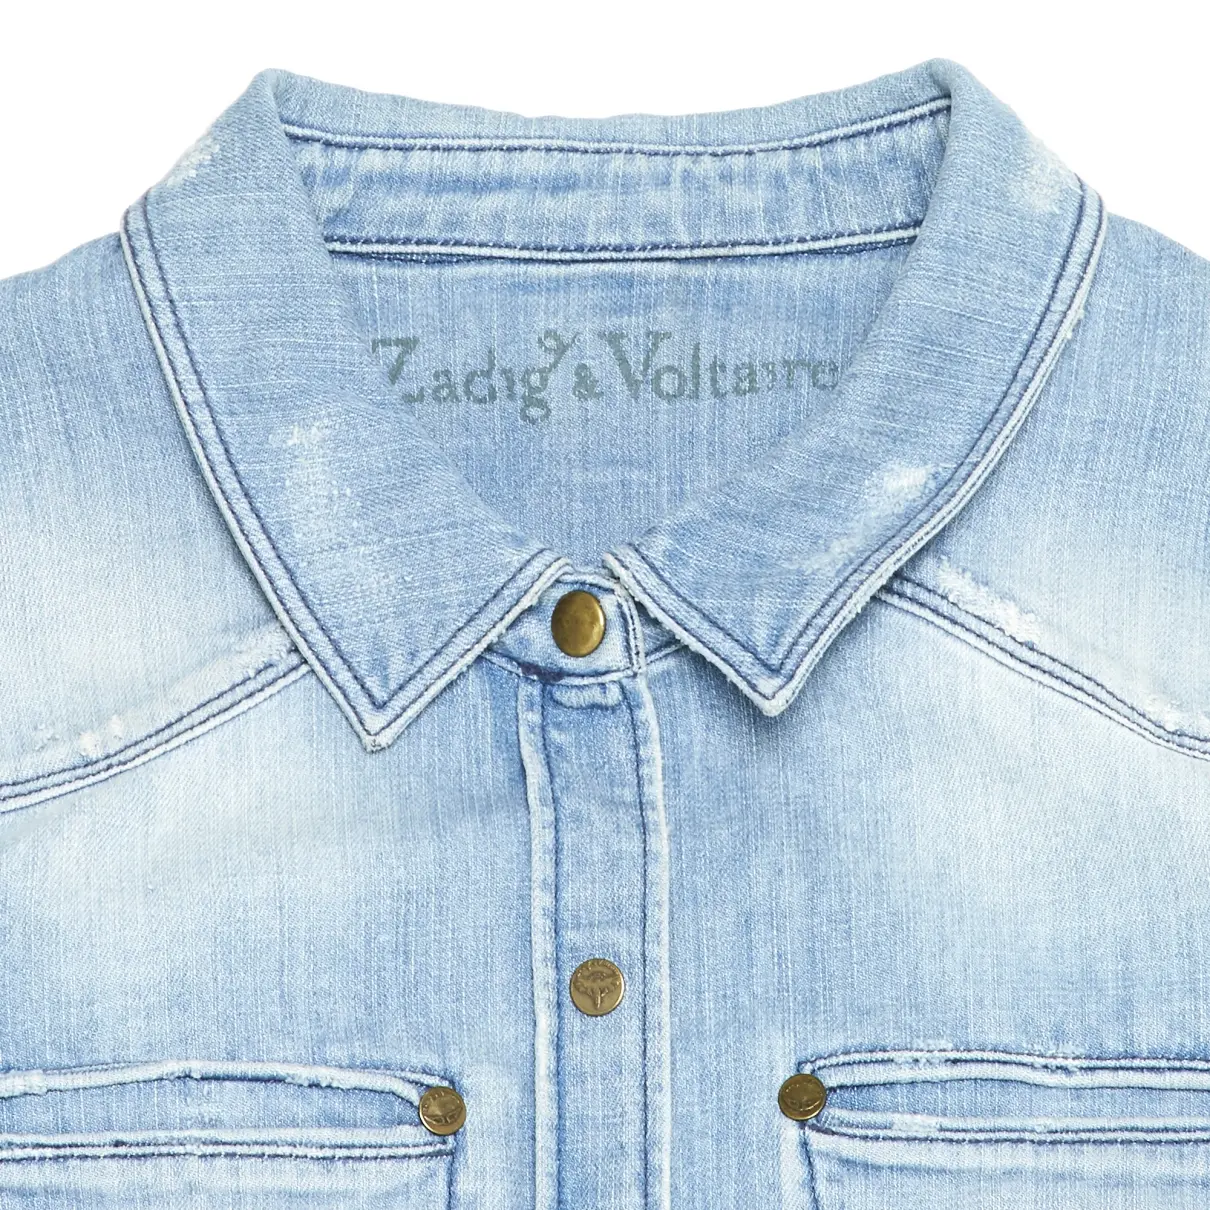 Buy Zadig & Voltaire Shirt online